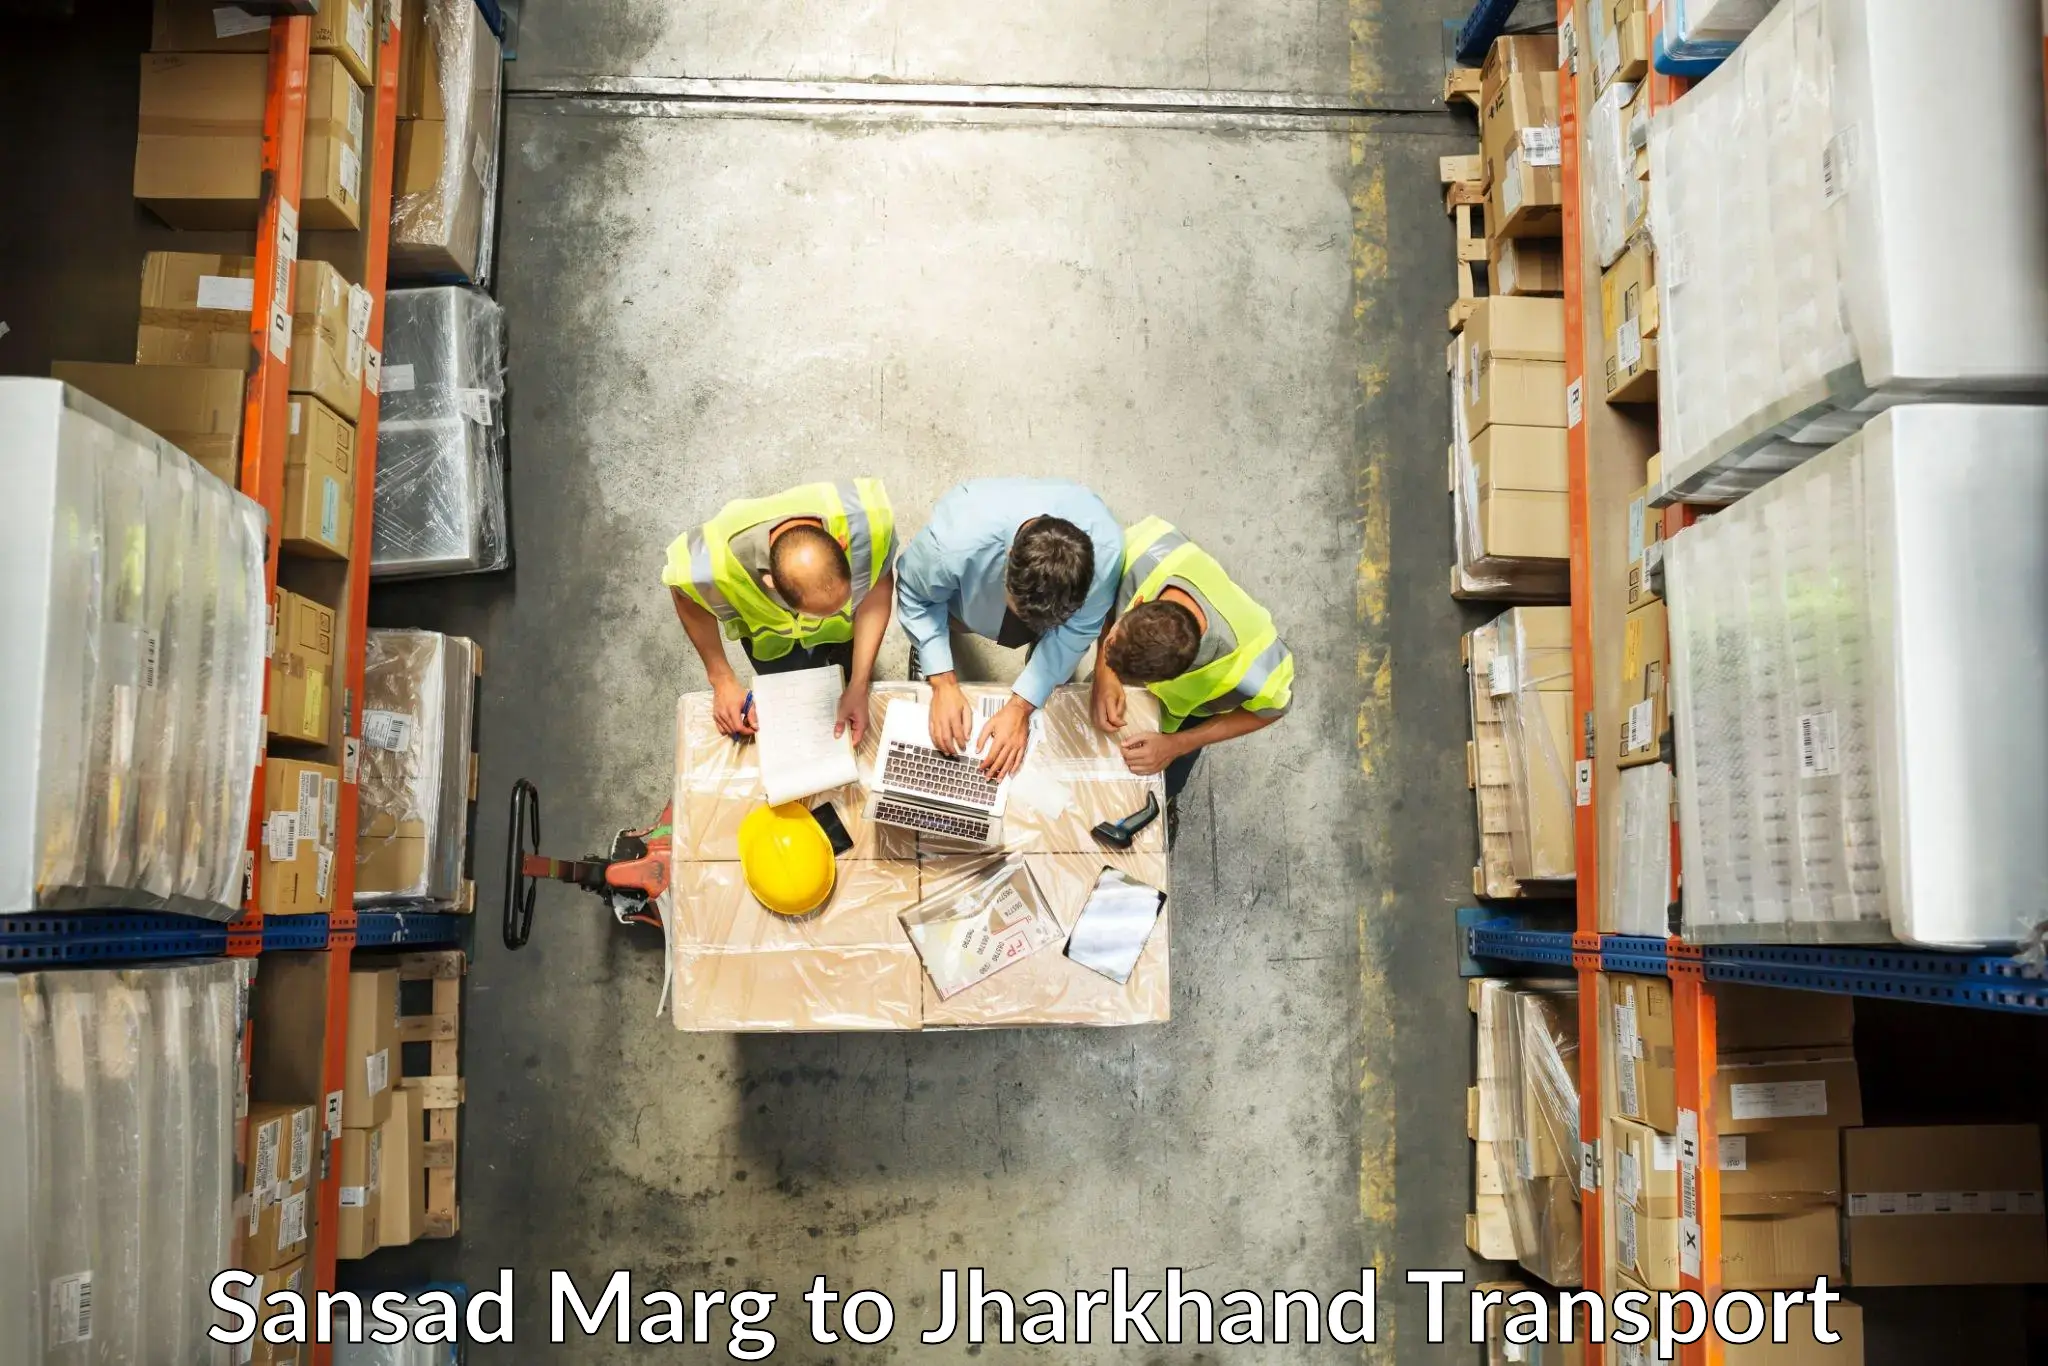 Commercial transport service Sansad Marg to Ormanjhi